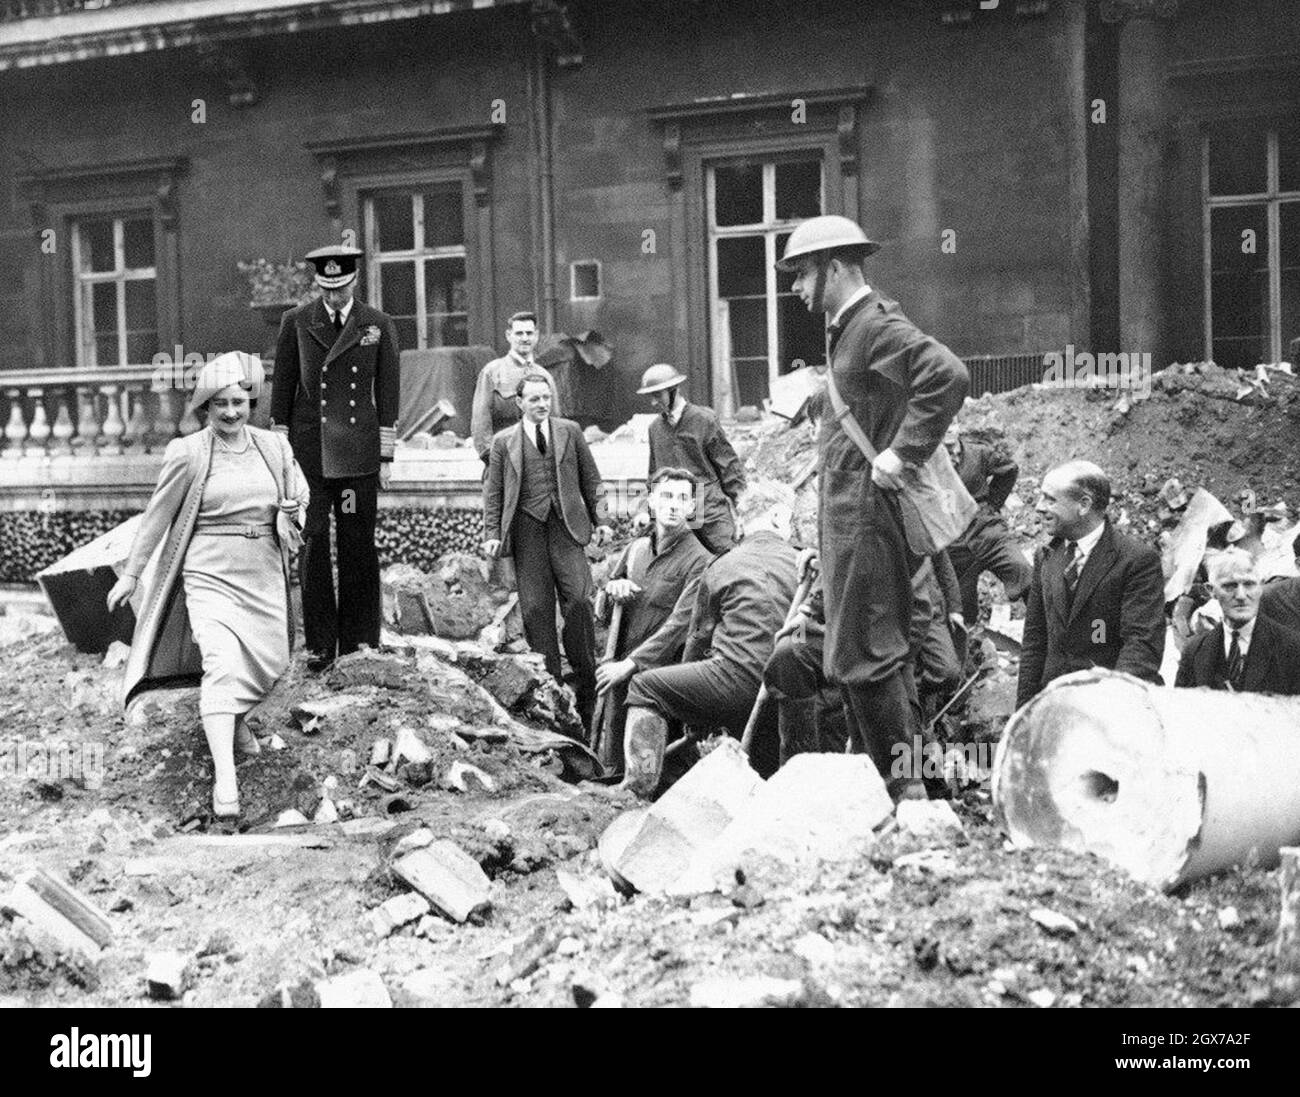 Le roi George VI et la reine Elizabeth (la reine mère) ont examiné les dommages causés au palais de Buckingham lors du blitz de Londres en 1940 Banque D'Images